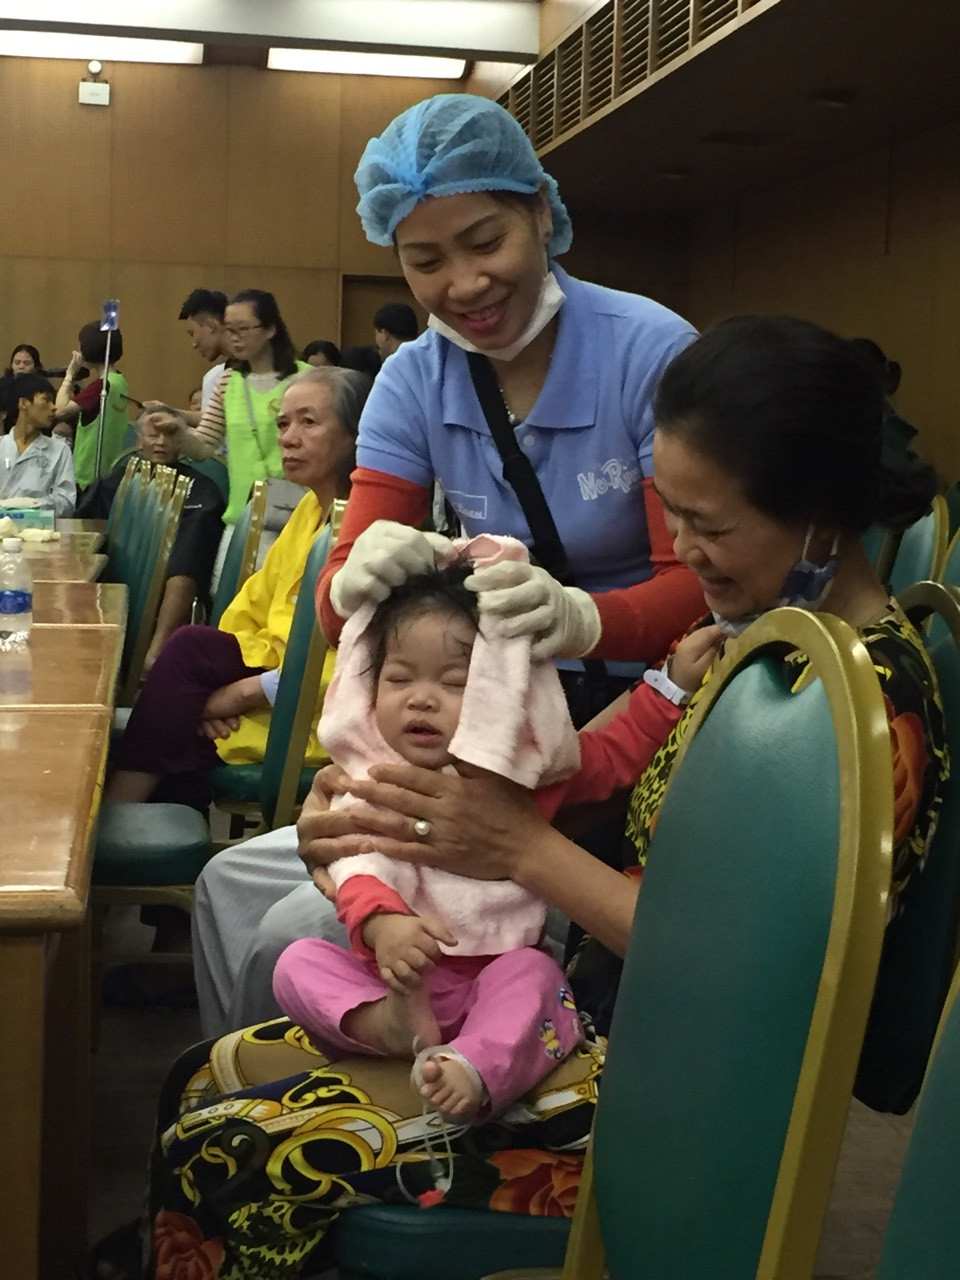 Cắt tóc, gội đầu miễn phí cho bệnh nhân tại Bệnh viện Bạch Mai